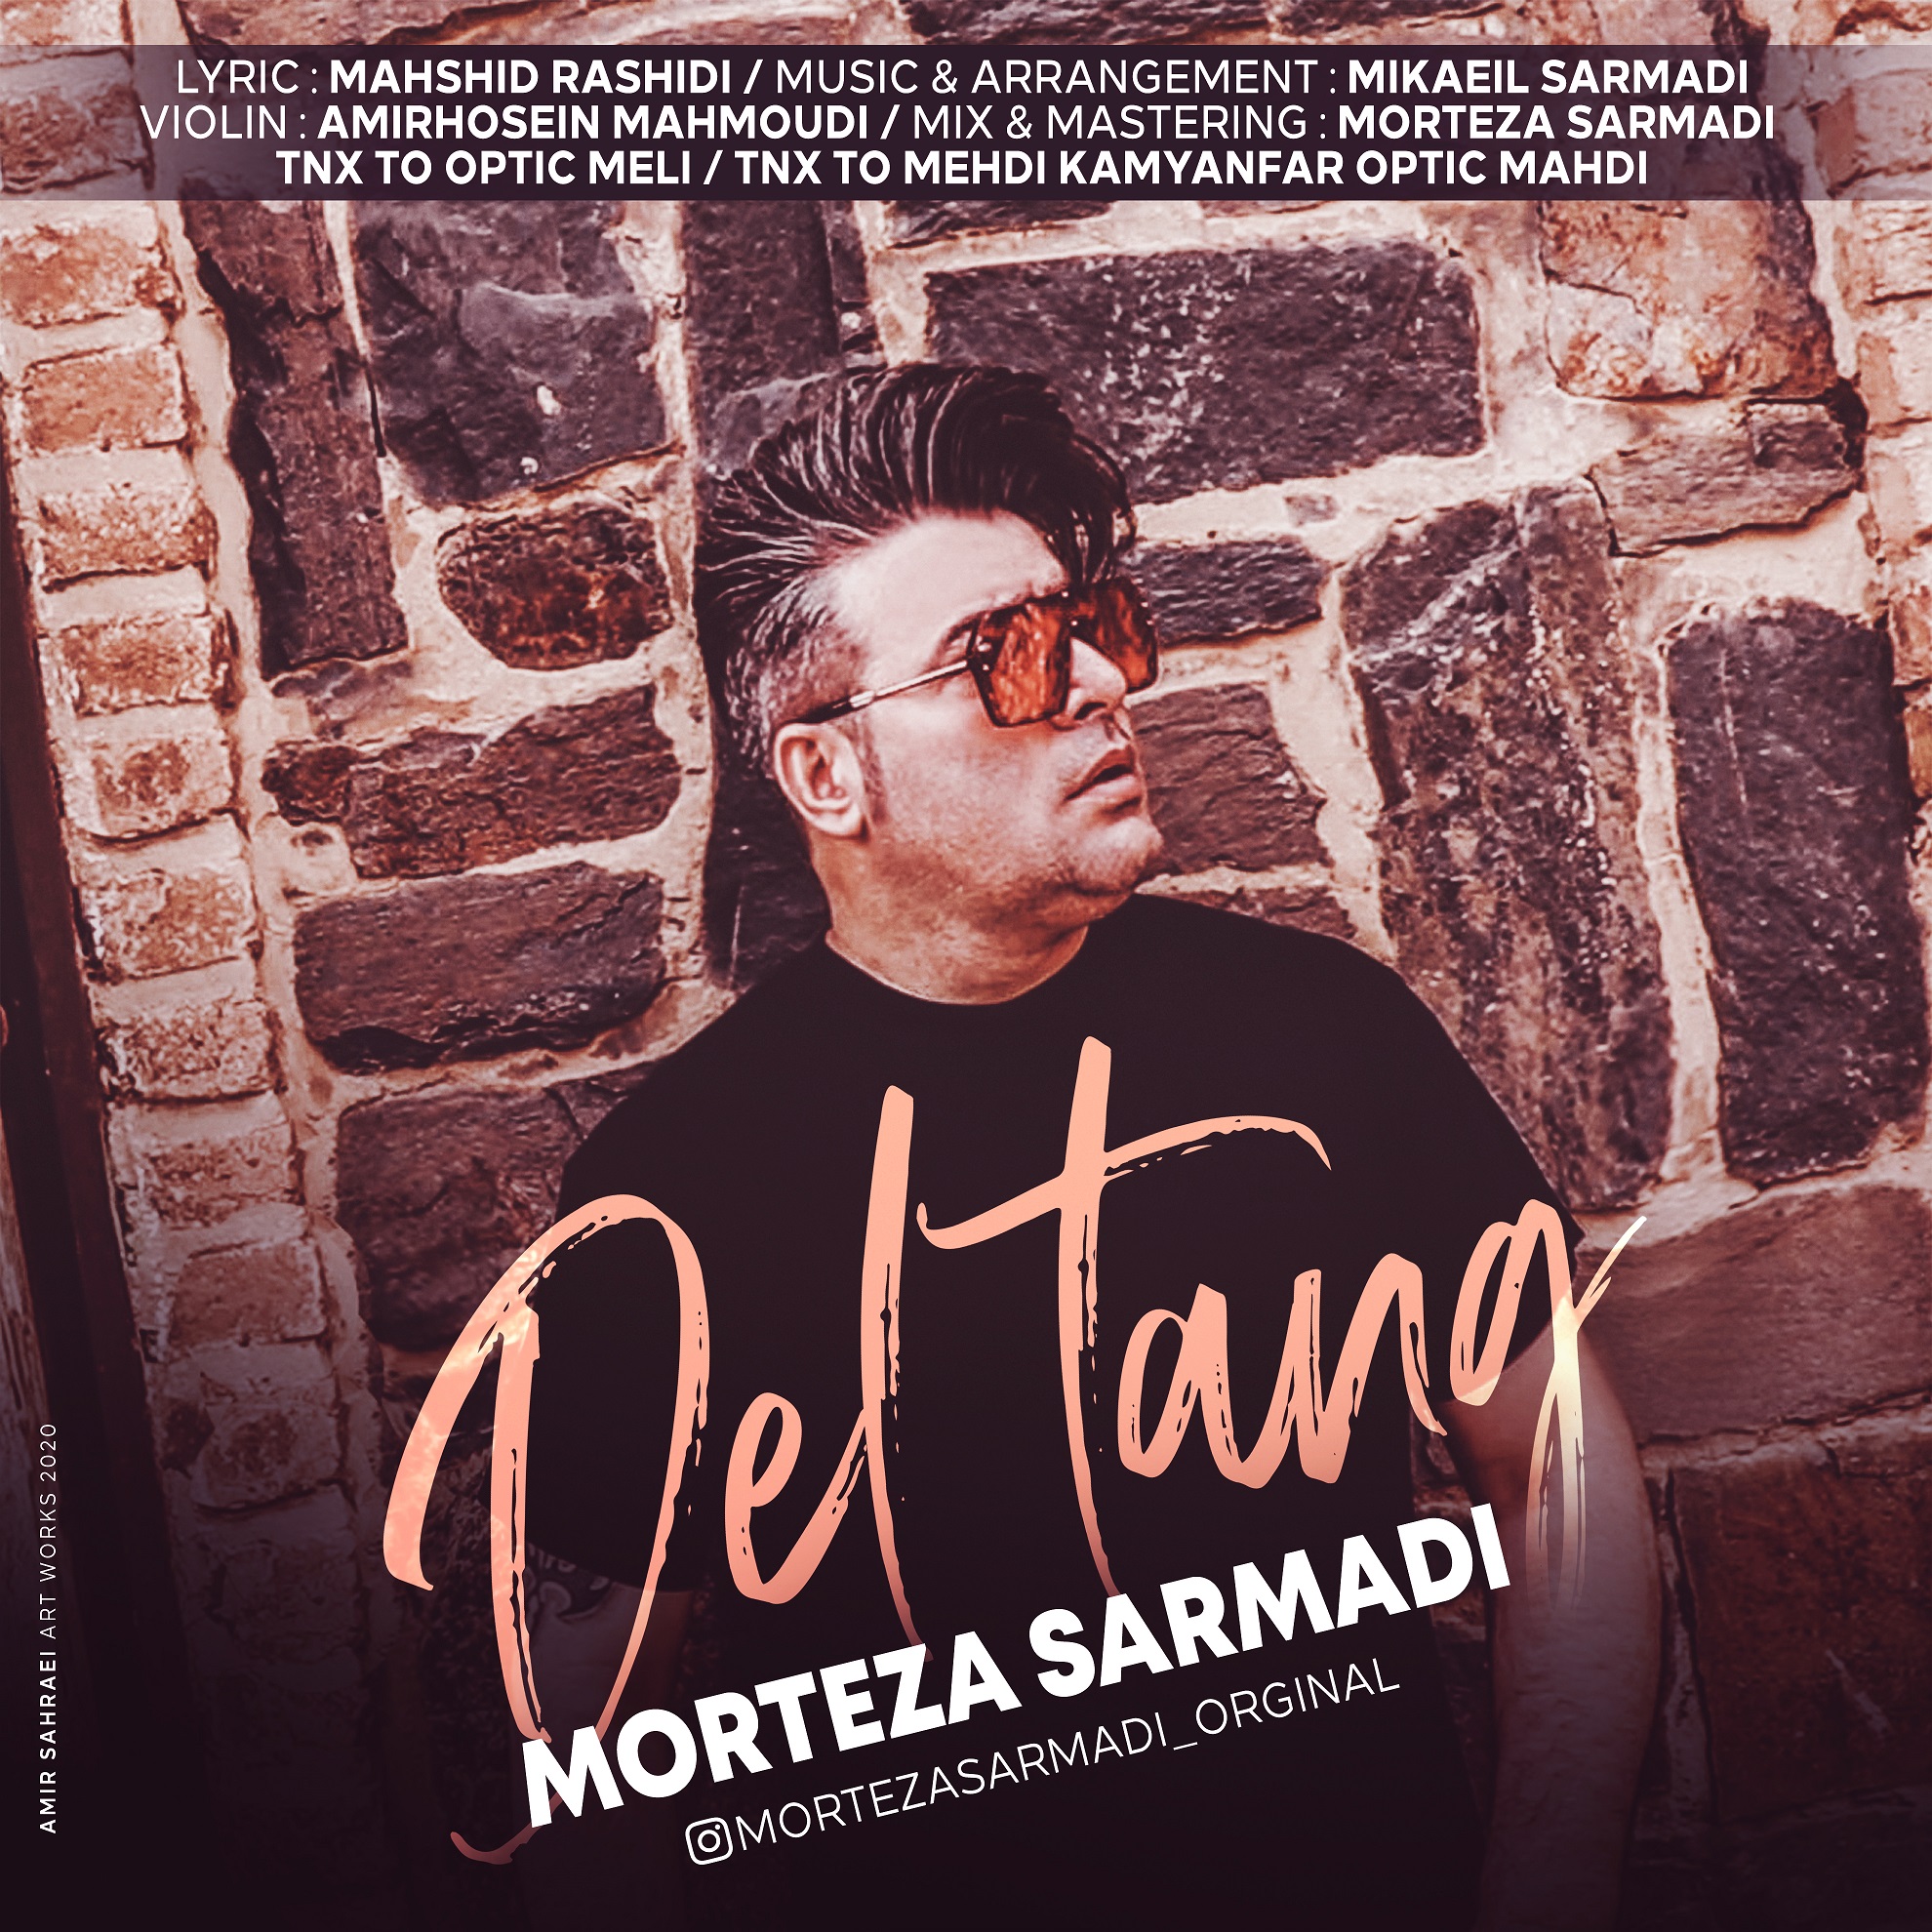  دانلود آهنگ جدید مرتضی سرمدی - دلتنگ | Download New Music By Morteza Sarmadi - Deltang